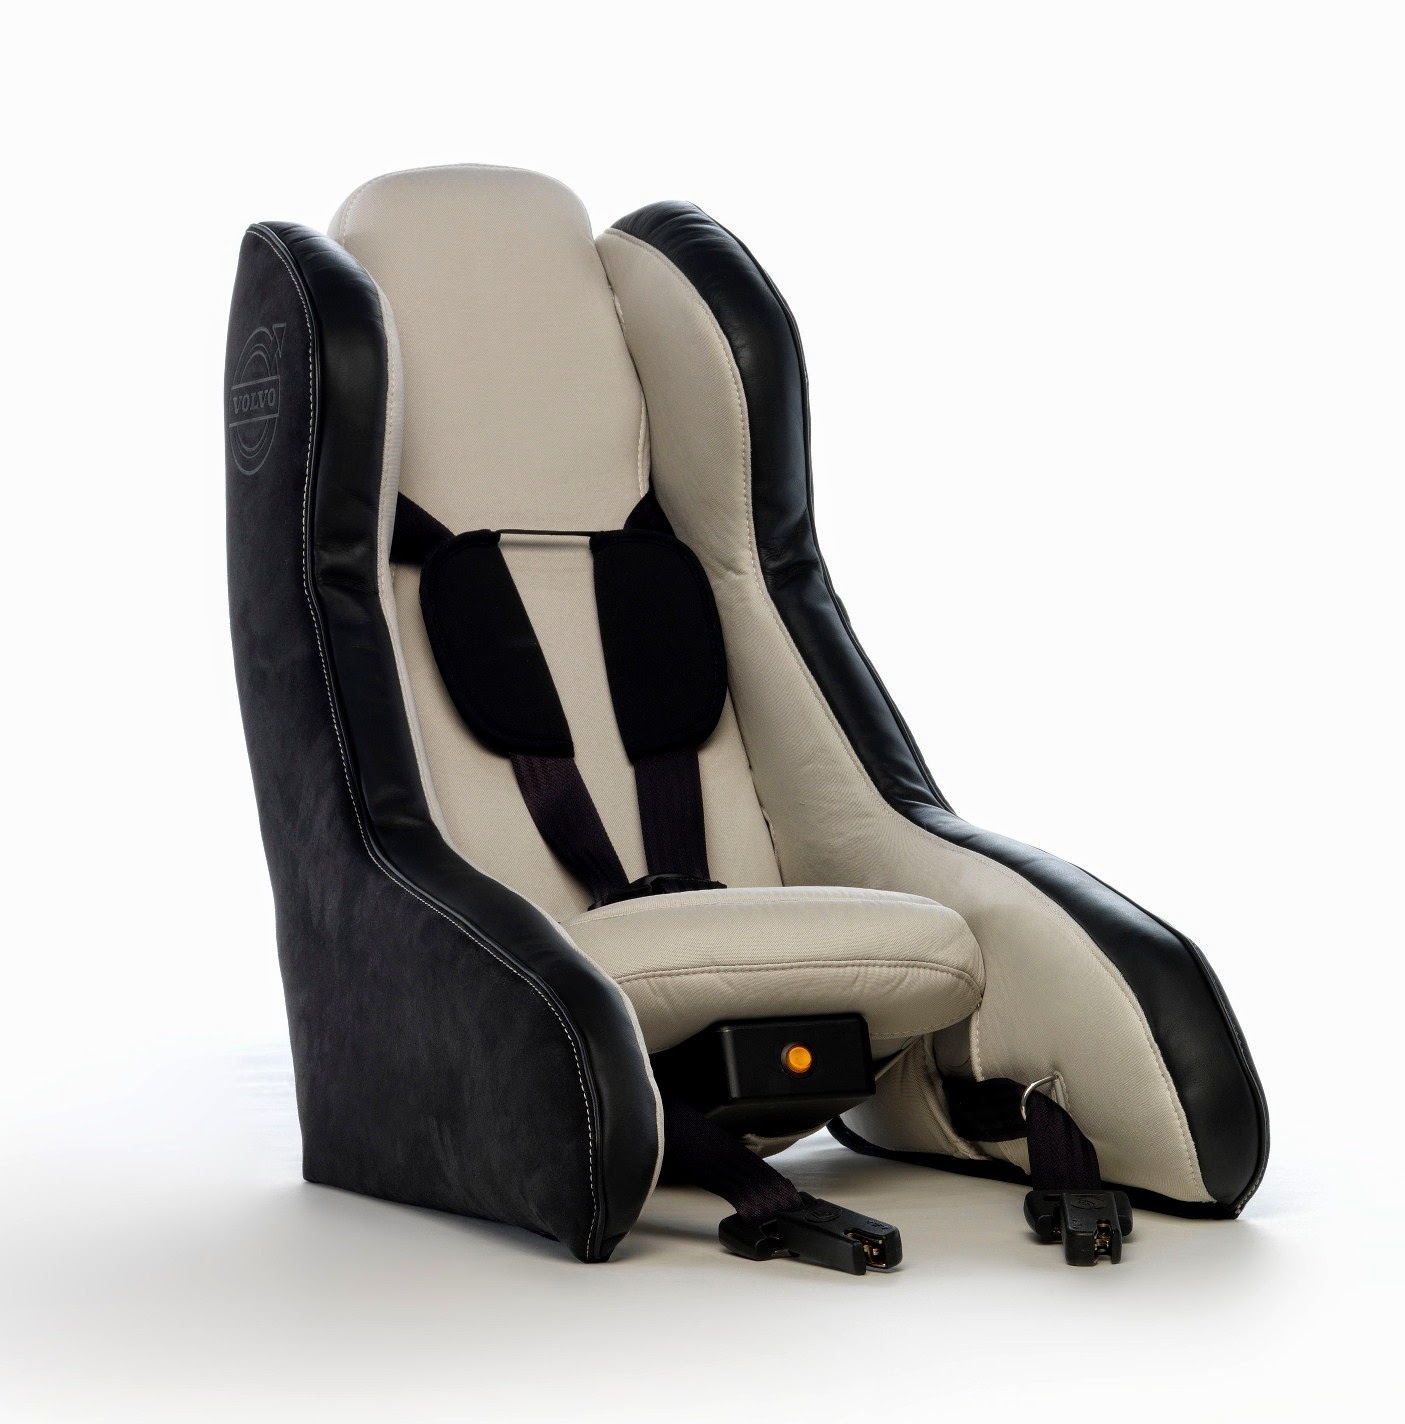 Ασφάλεια για τους μικρούς επιβάτες: Η Volvo παρουσιάζει concept φουσκωτού παιδικού καθίσματος - Φωτογραφία 7